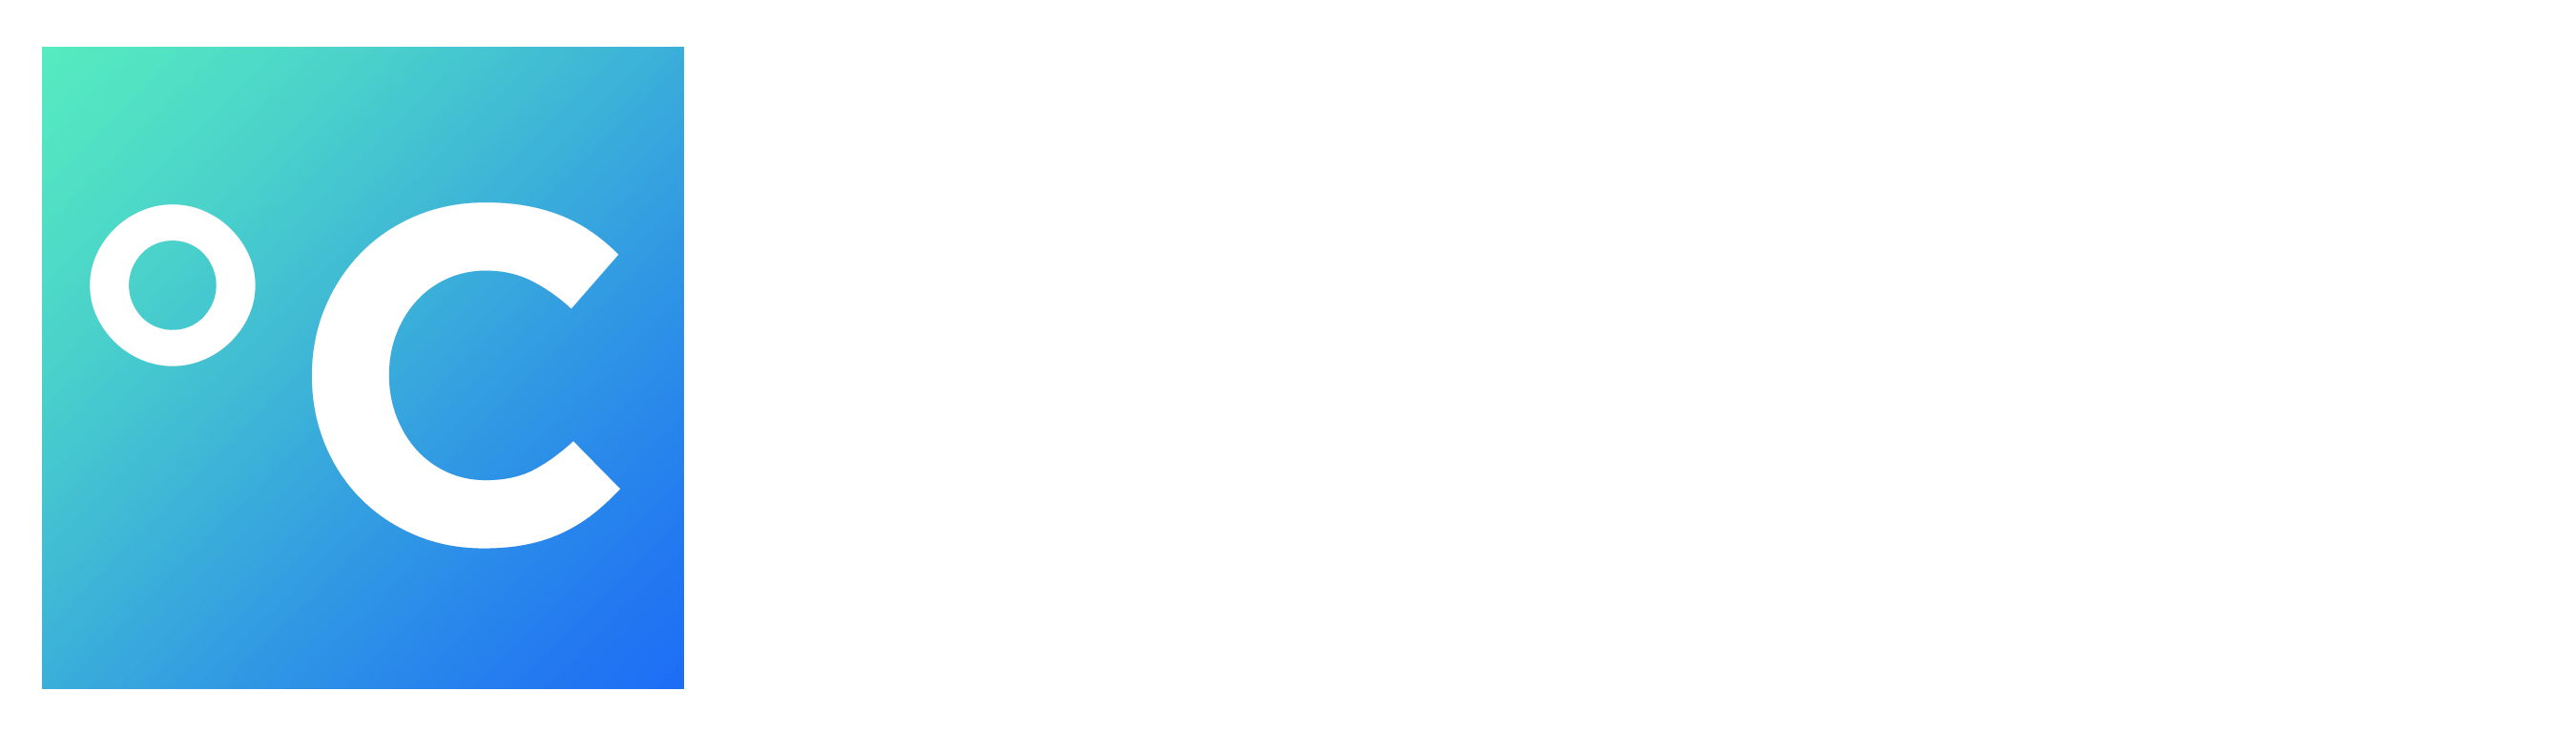 C-Scool